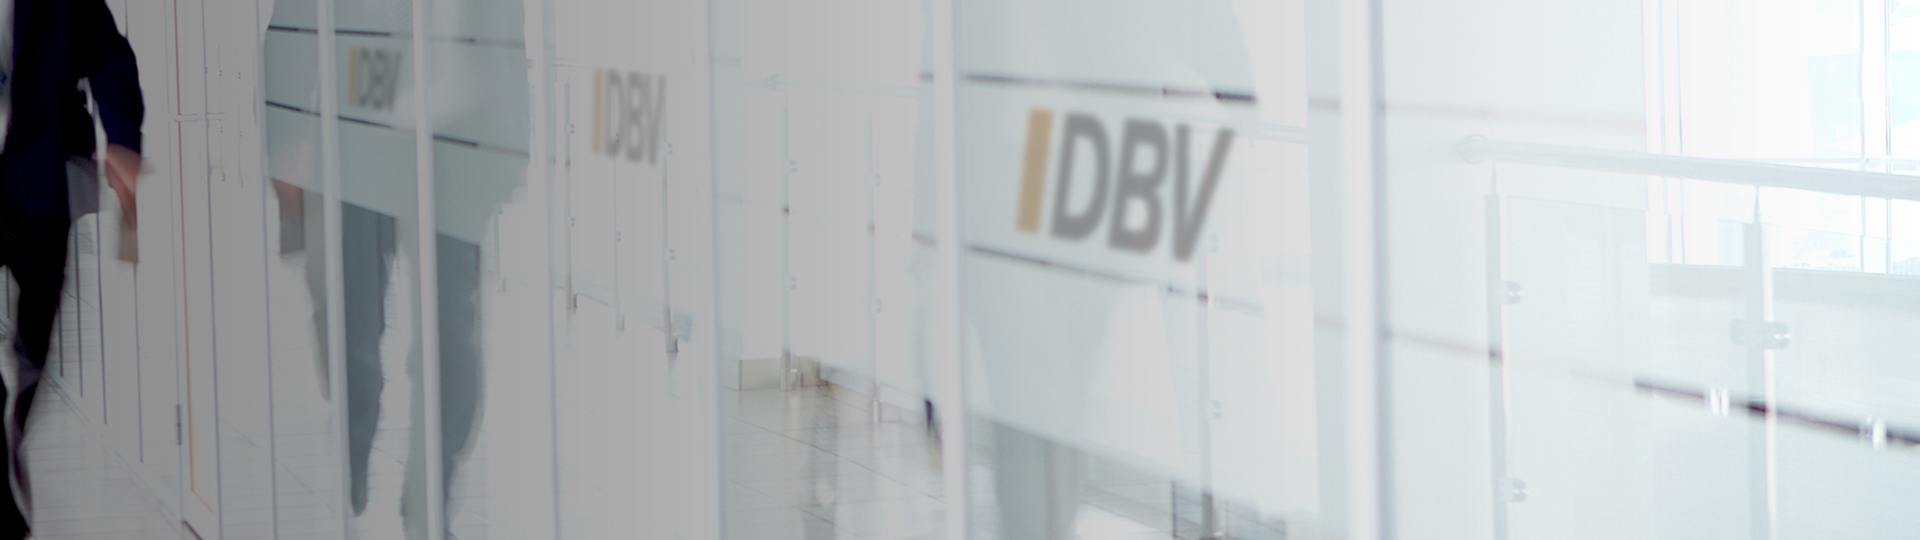 Anwartschaftversicherung | DBV Hannover Hornig & Knoch oHG 